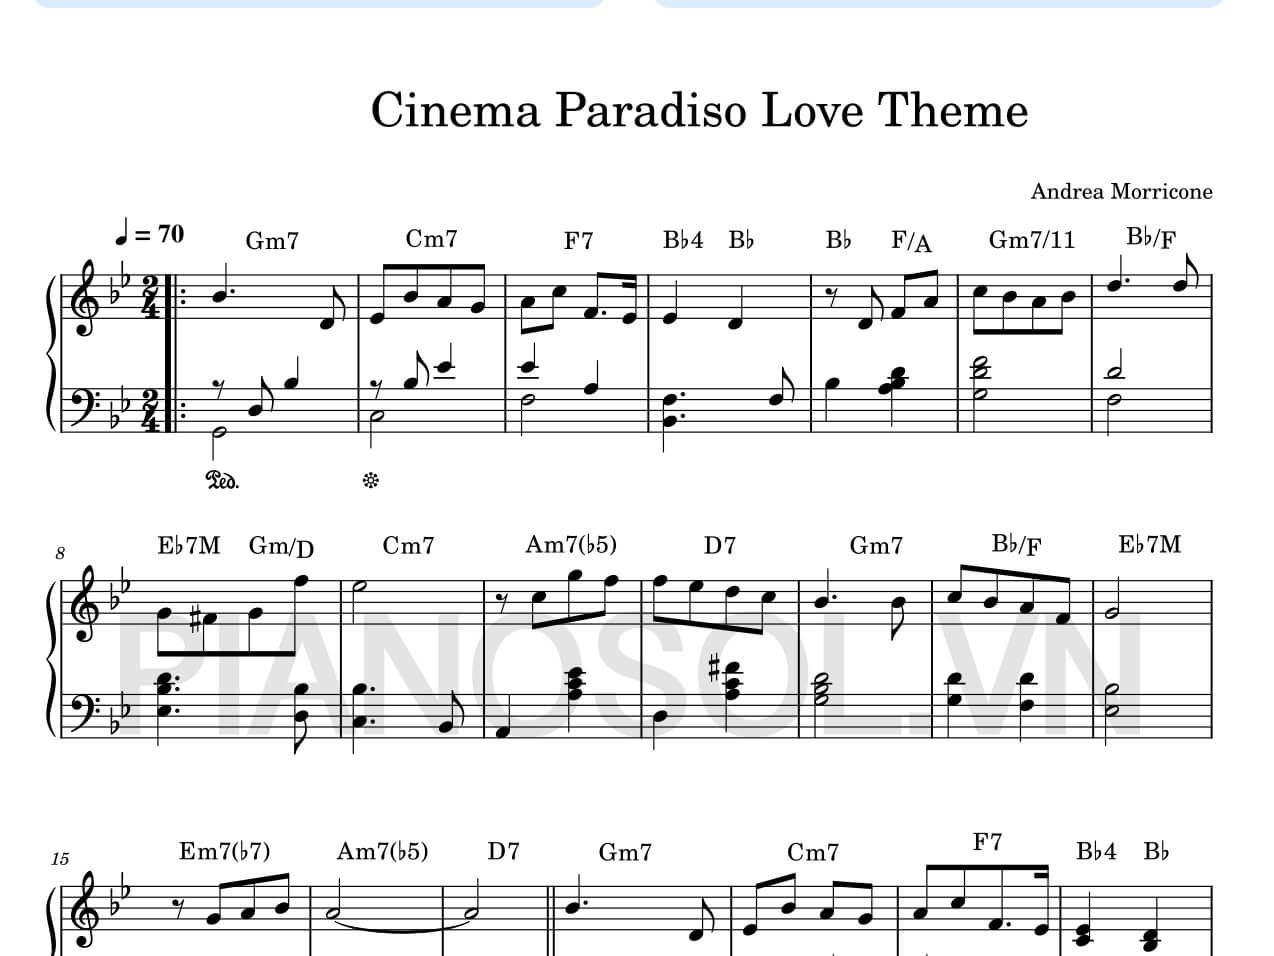 SHEET PIANO LOVE THEME – CINEMA PARADISO